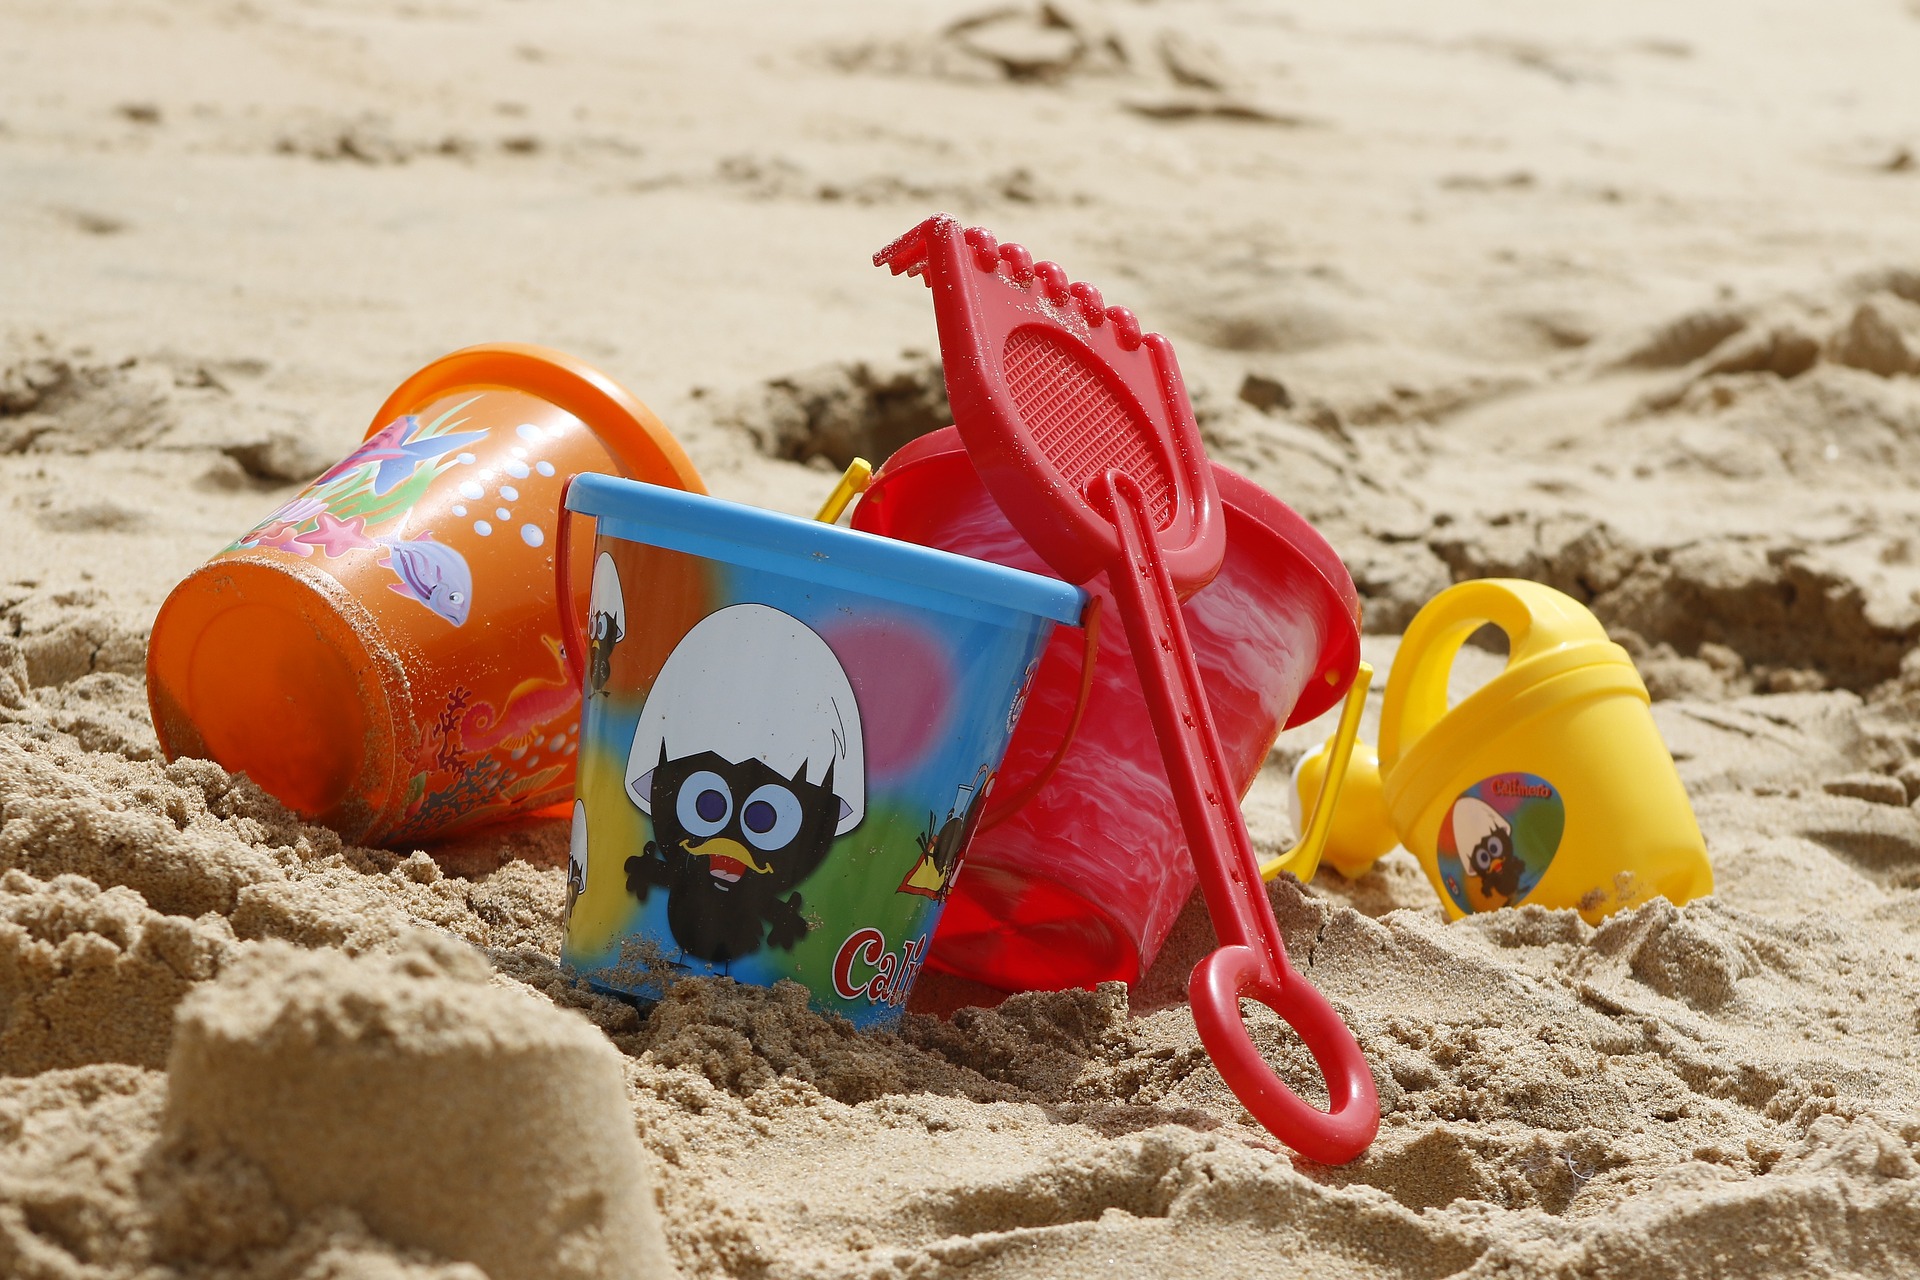 Kinder-Spielzeuge im Sand; Eimer, Schaufel